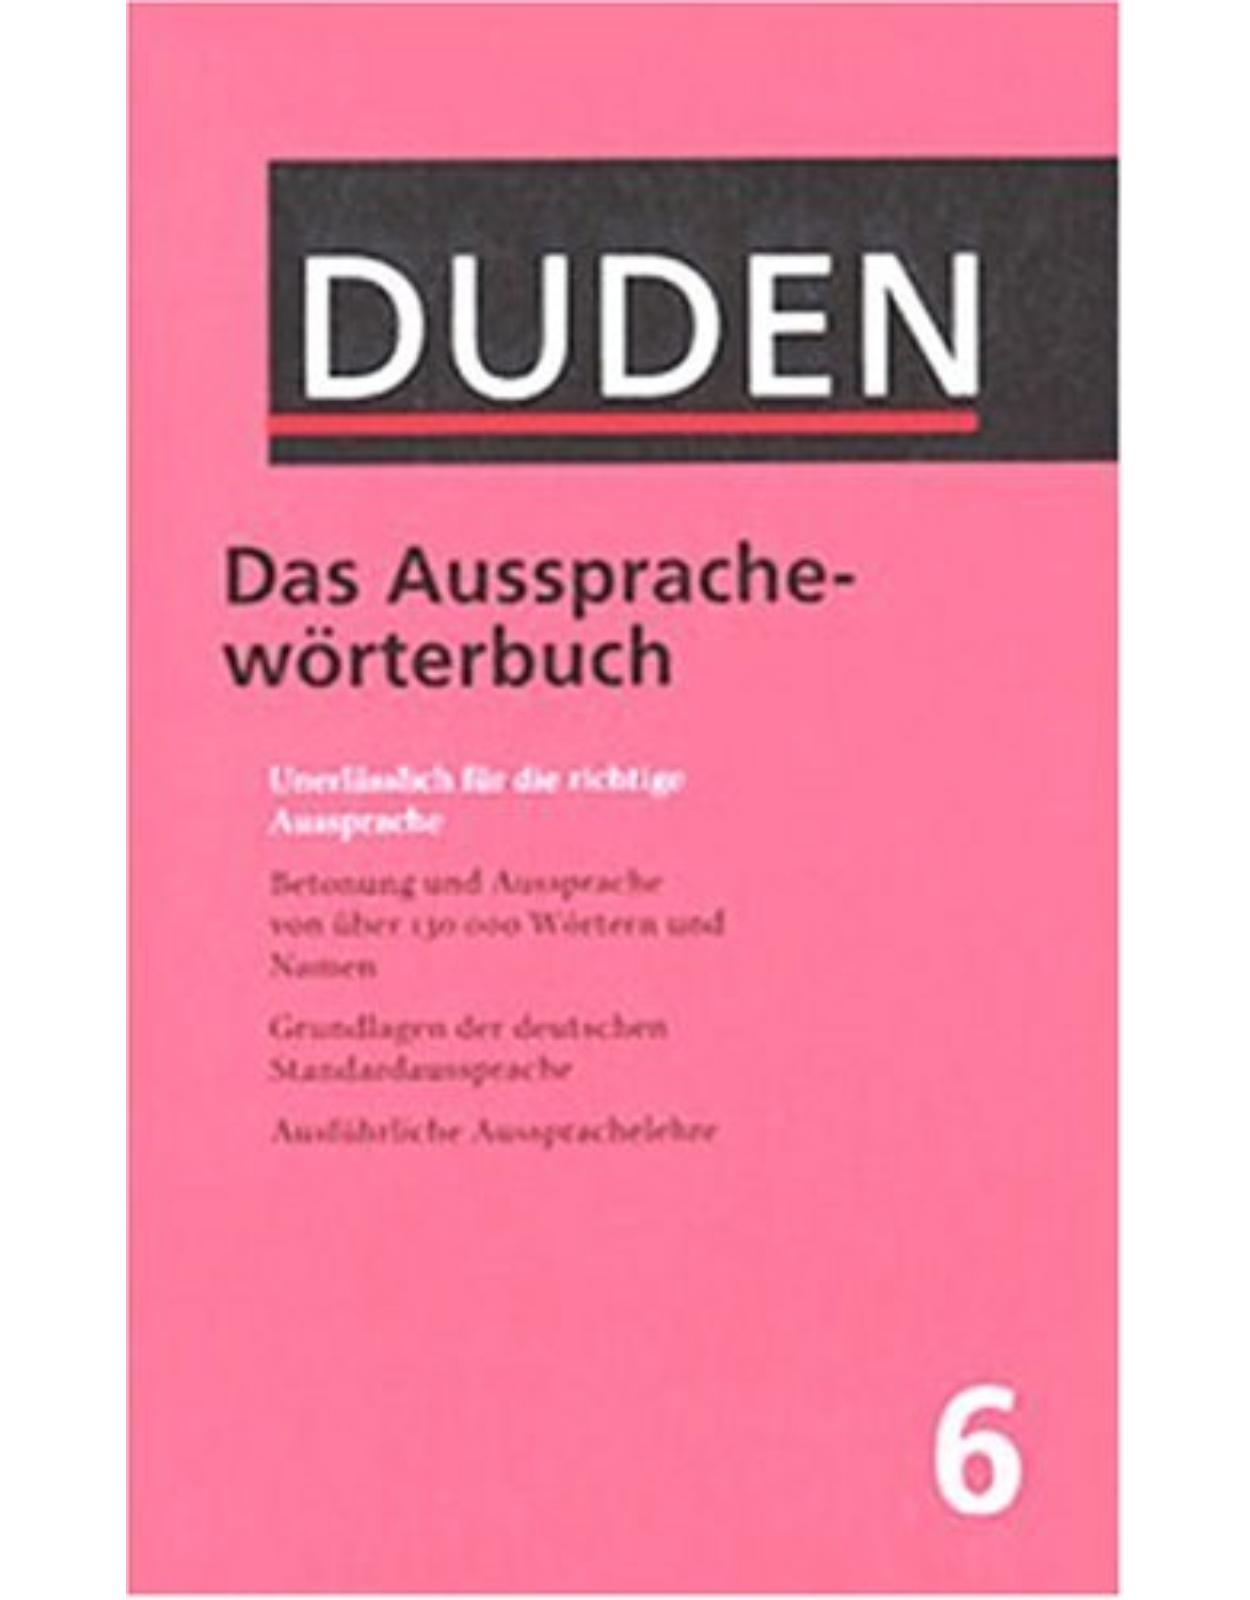 Der Duden, 12 Bde., Band 6, Duden Aussprachewörterbuch